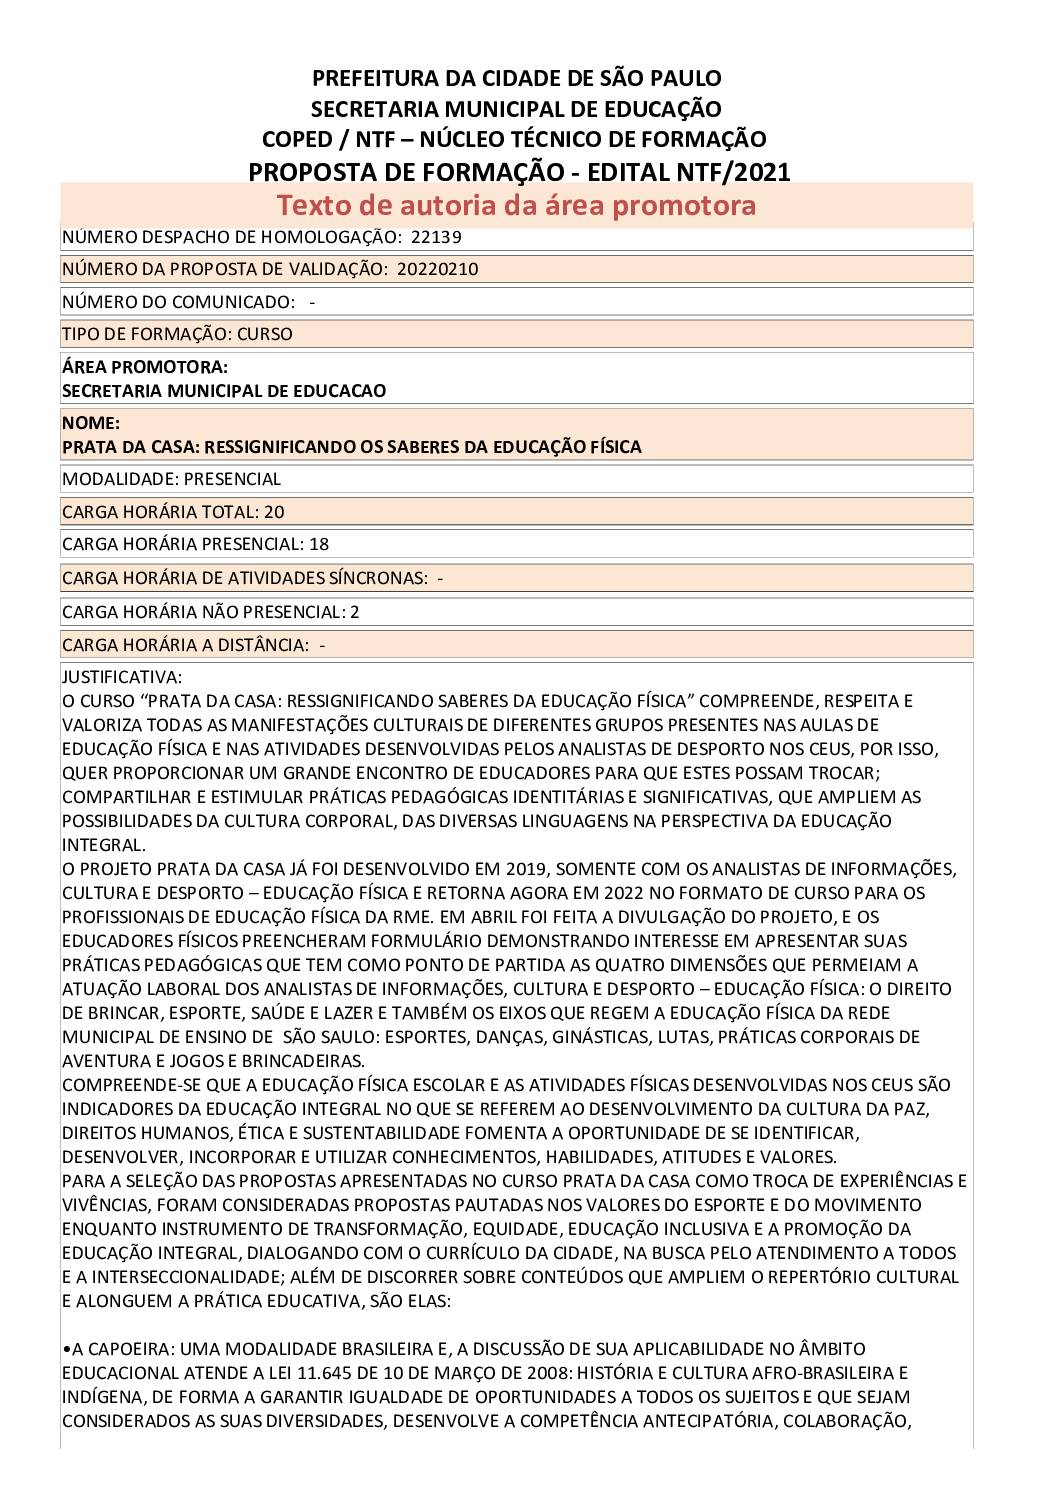 PDF com informações sobre o curso: PRATA DA CASA:RESSIGNIFICANDO OS SABERES DA EDUCAÇÃO FÍSICA